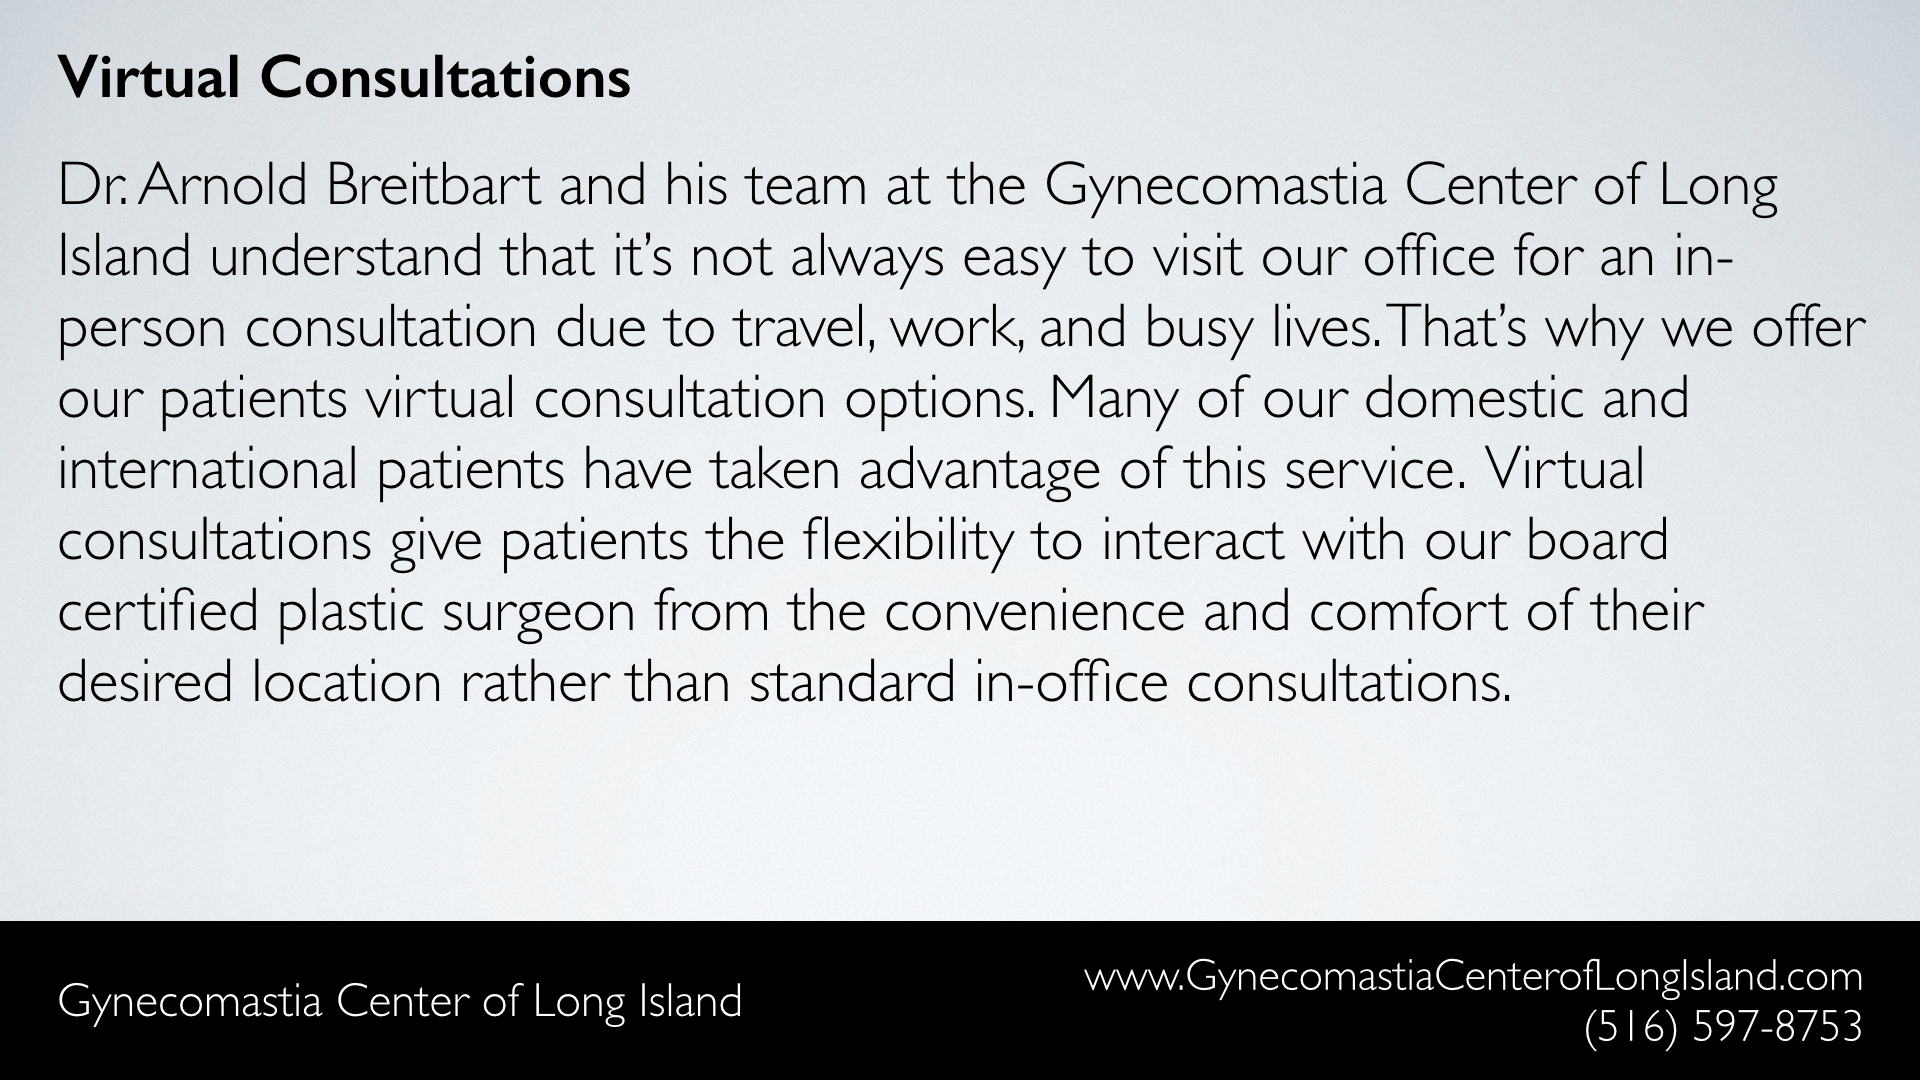 Gynecomastia Center of Long Island (Manhasset NY) - Virtual Consultations